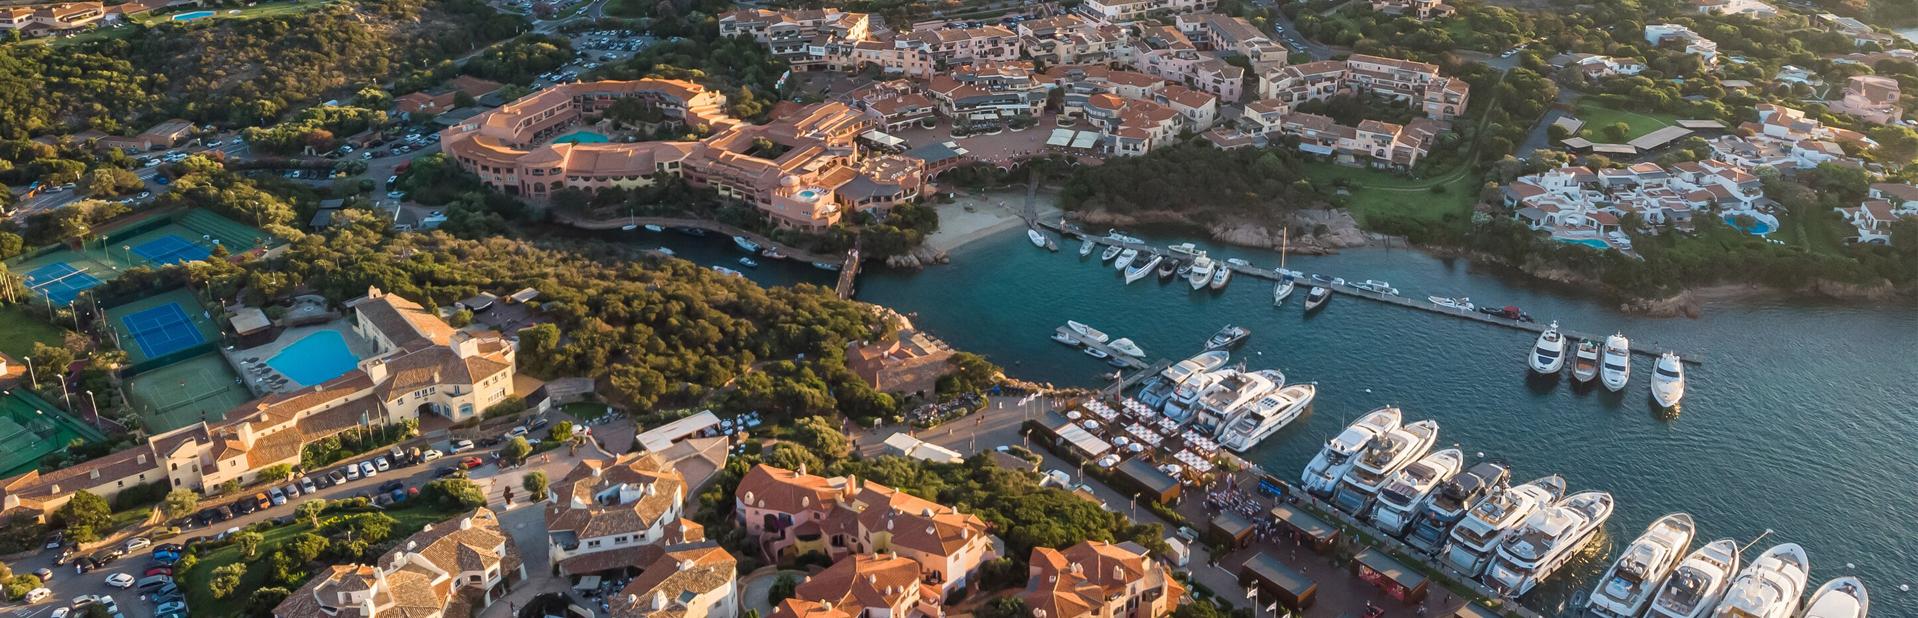 Индивидуальные туры на Сардинию цены